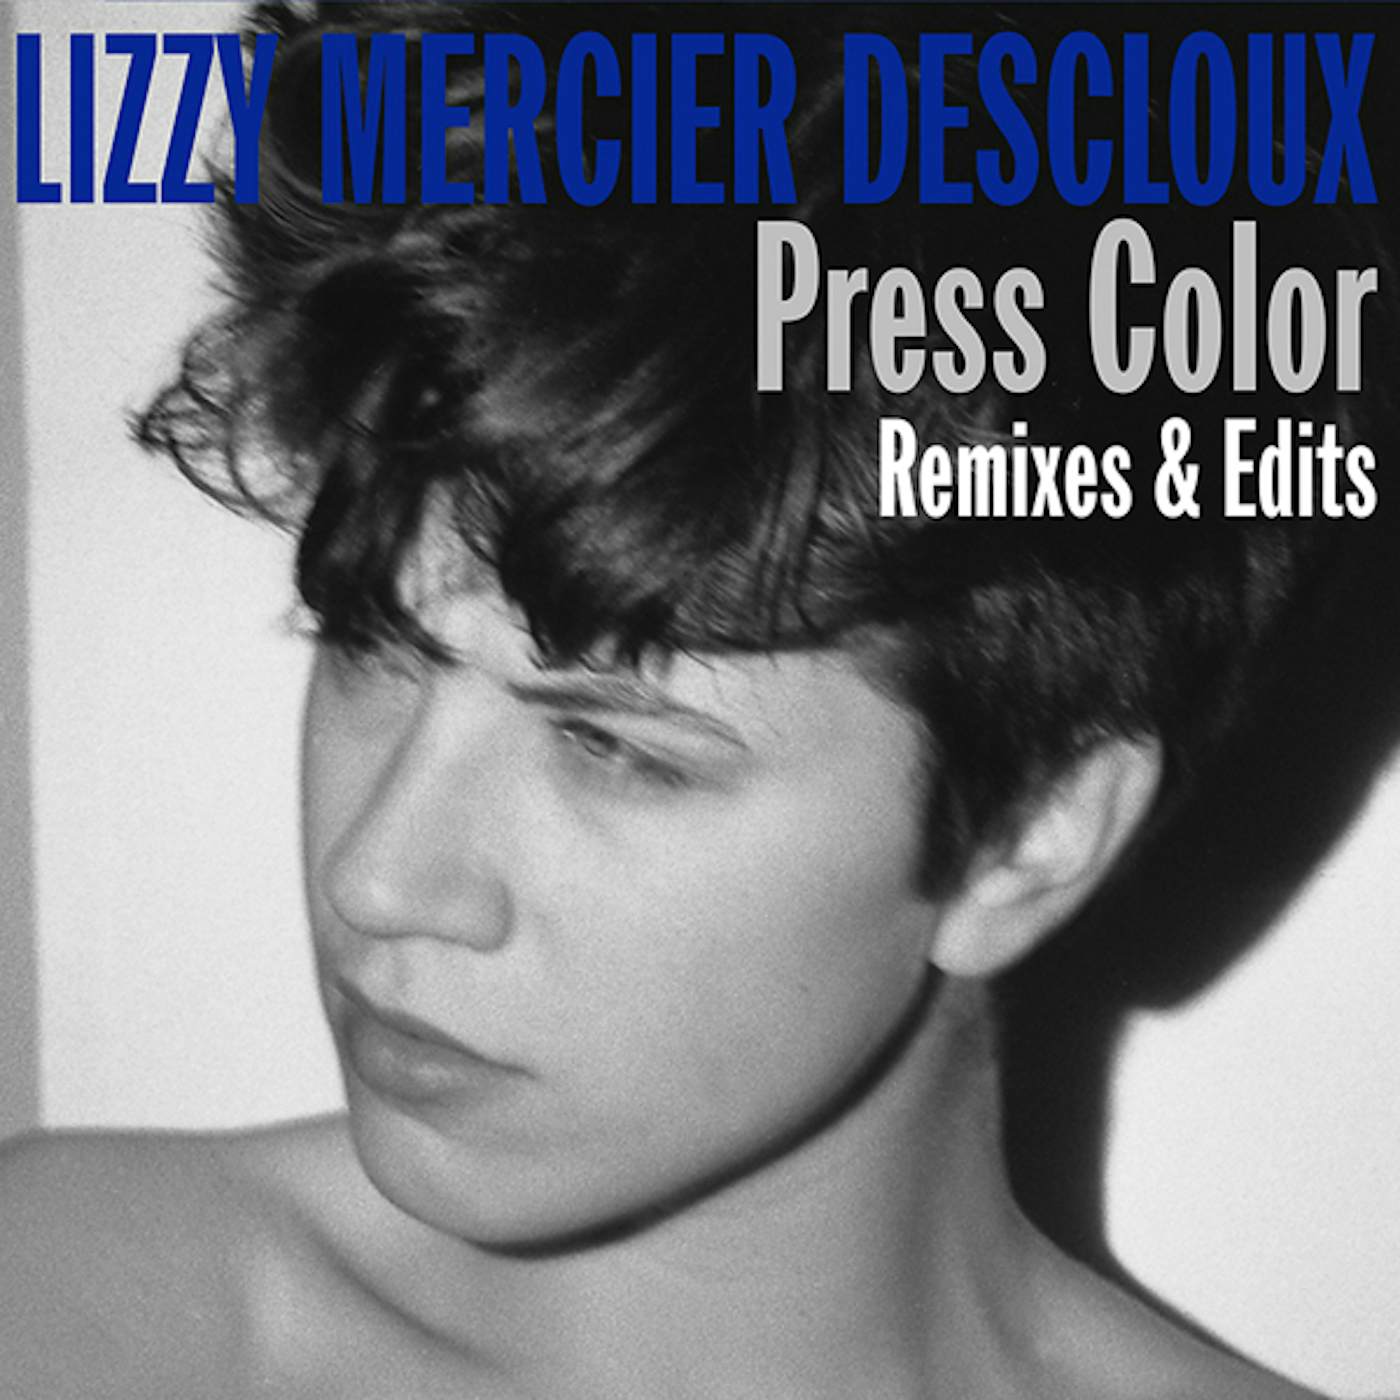 Lizzy Mercier Descloux PRESS COLOR REMIXES & EDITS CD